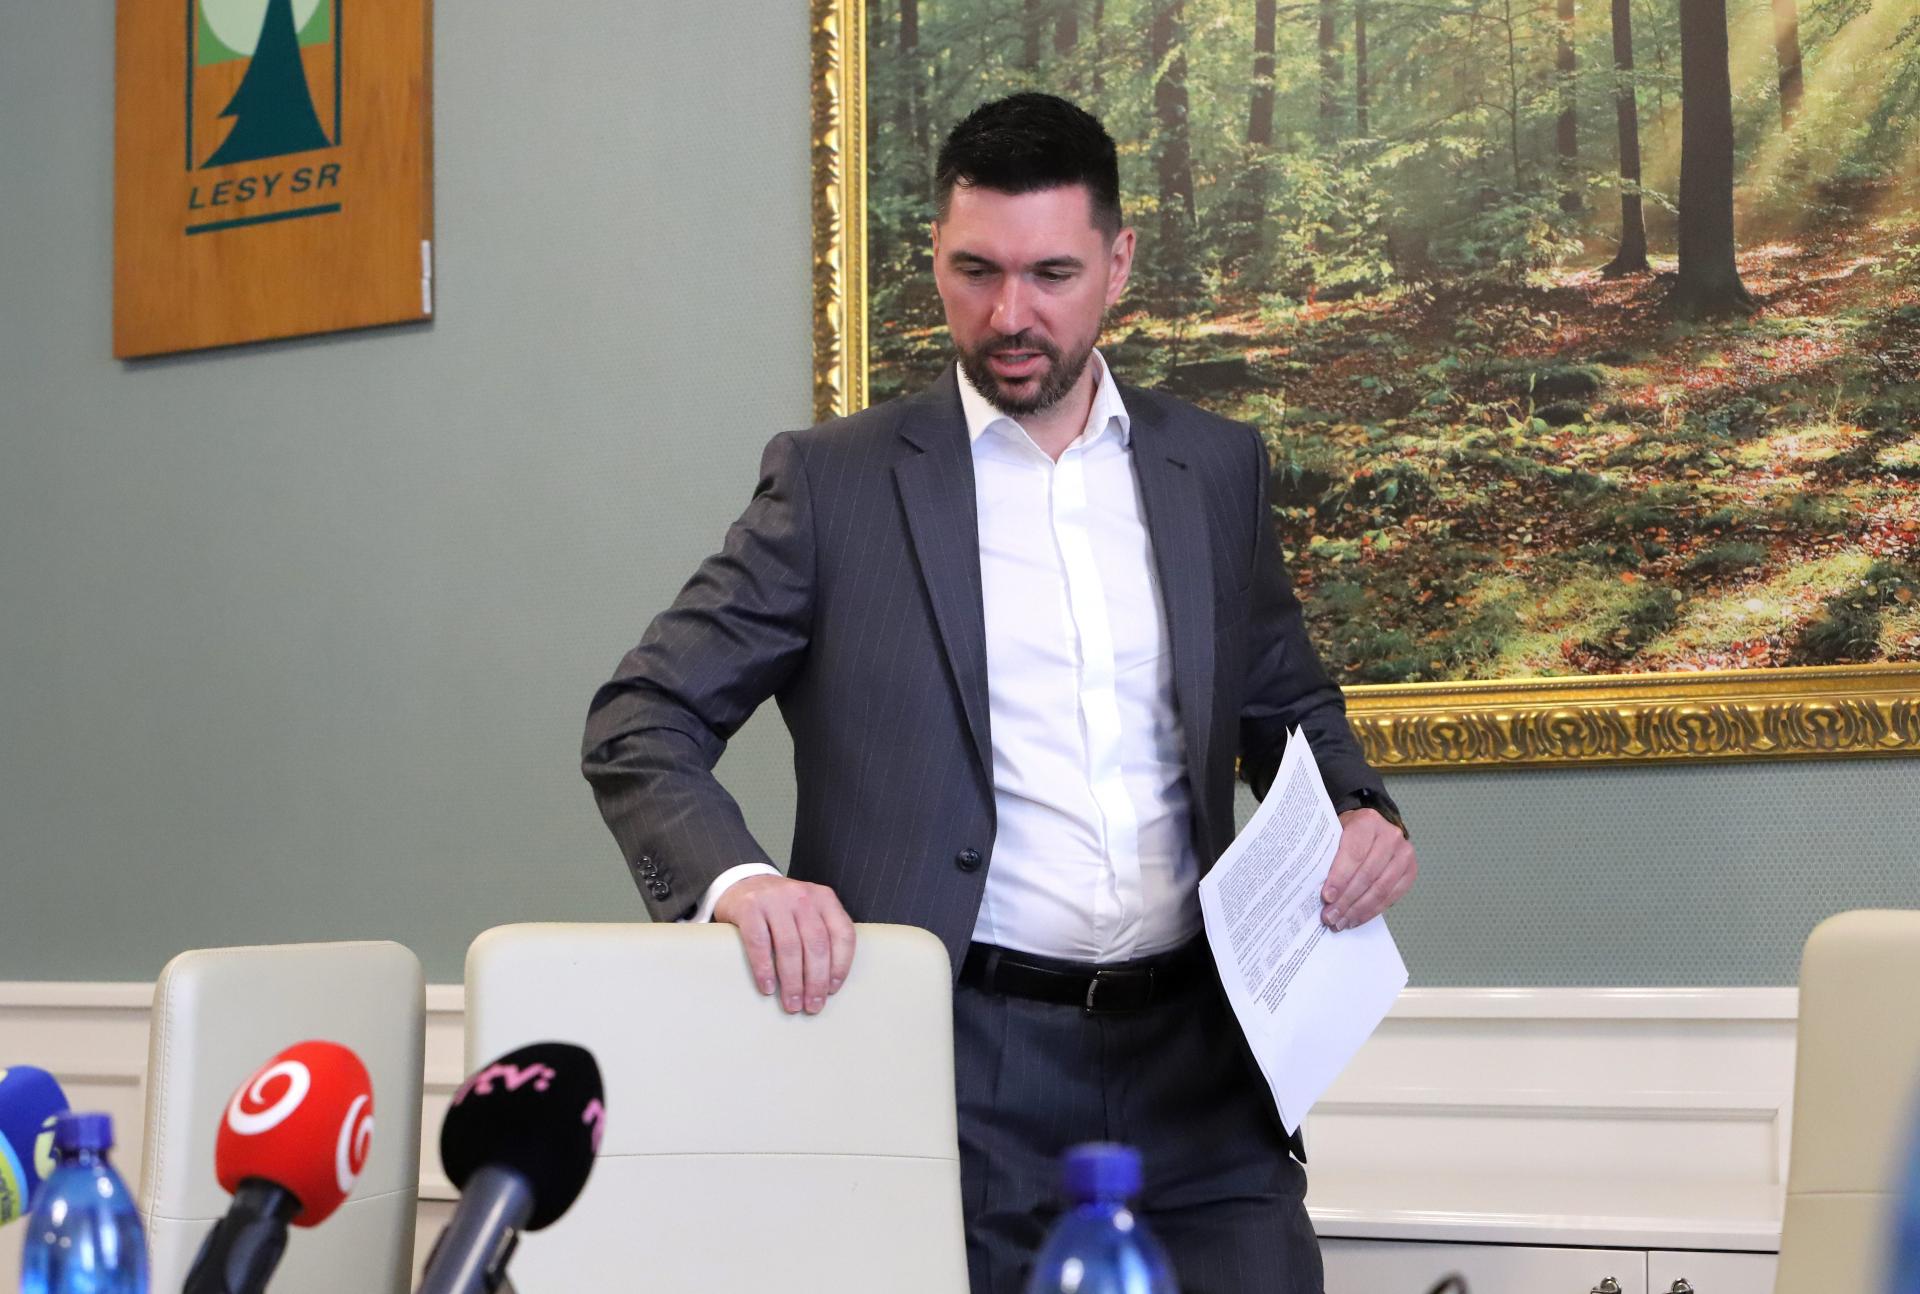 Postup uzatvárania zmlúv medzi štátnymi lesmi a dodávateľmi bol zákonný, tvrdí minister Takáč